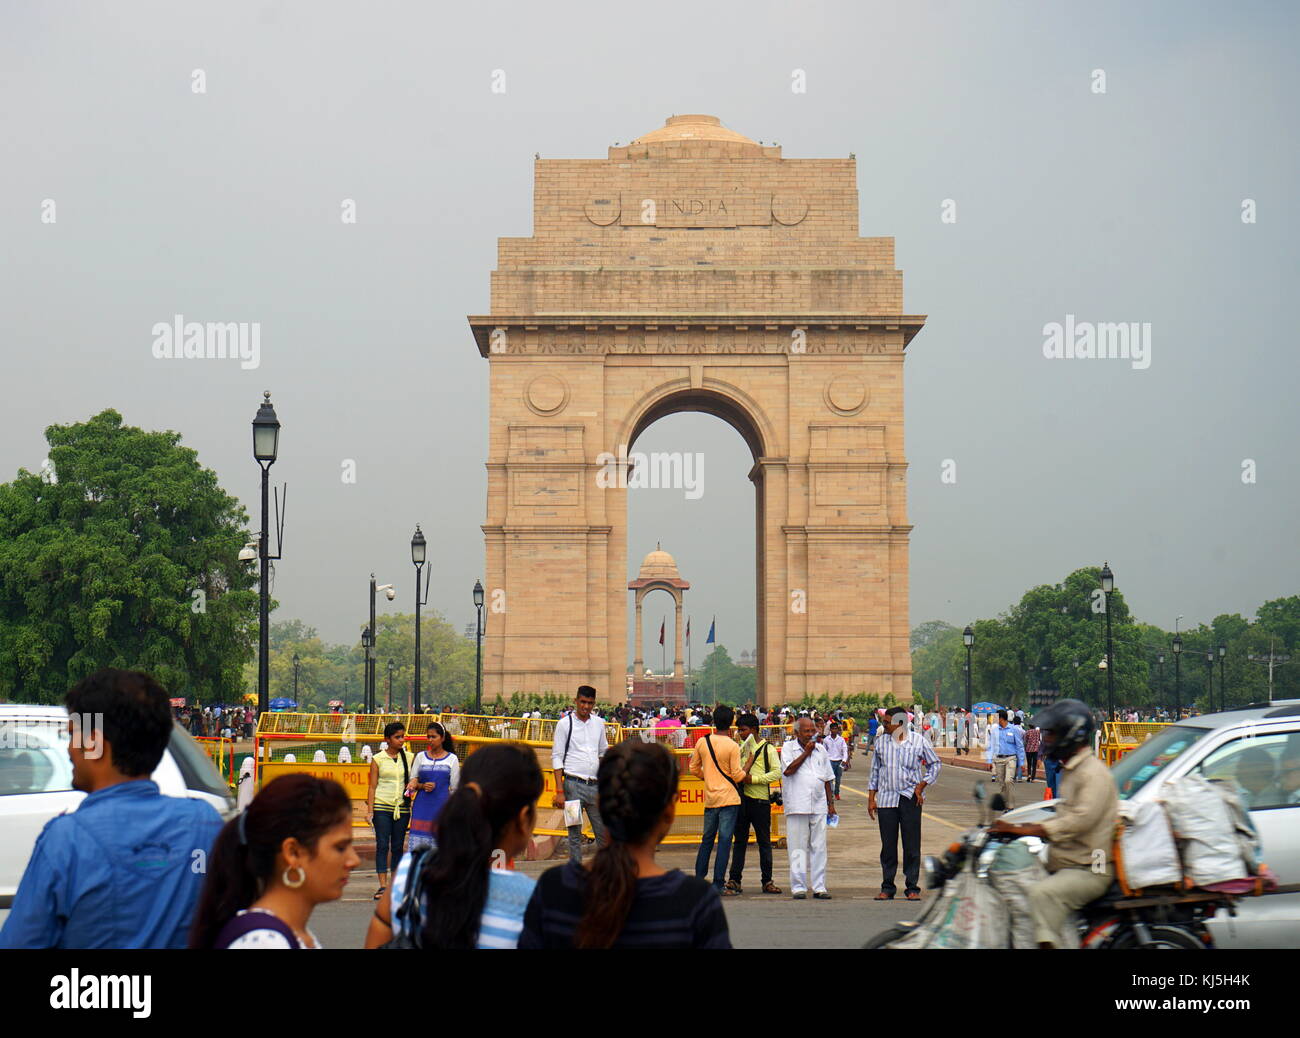 La porte de l'Inde, (initialement appelé le All India War Memorial), est un monument de guerre situé à cheval sur le Rajpath, sur le bord est du 'axe central" de New Delhi, Inde Banque D'Images